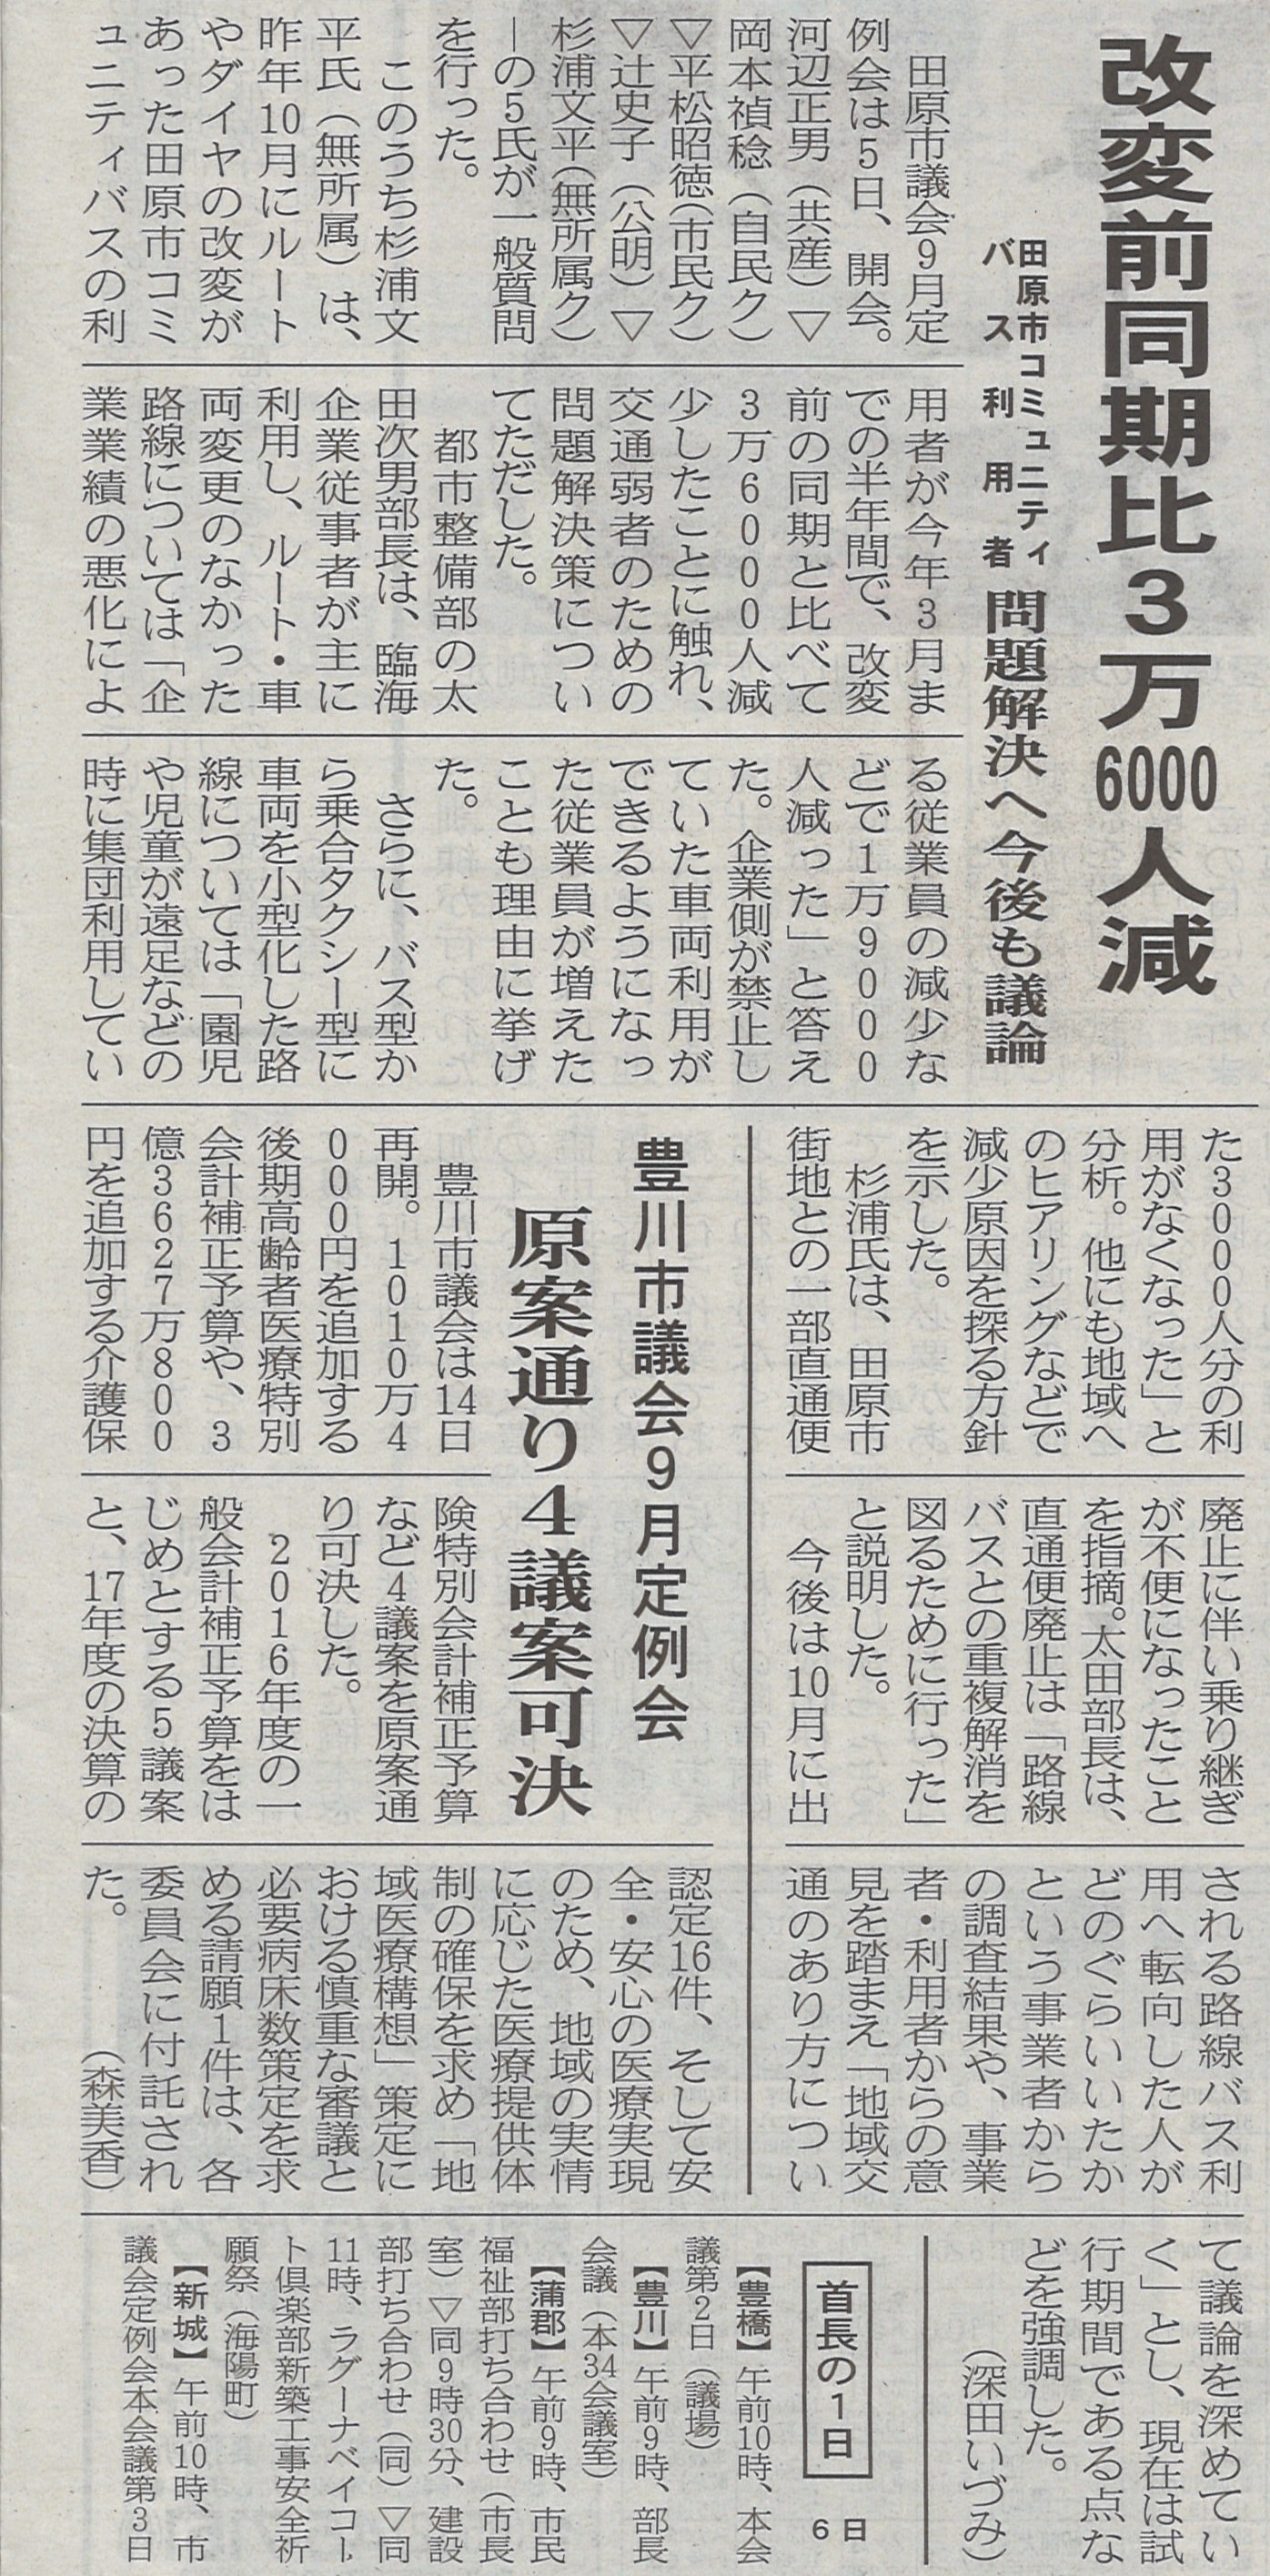 037_東日新聞新聞掲載「改変前同期比3万6千人減」